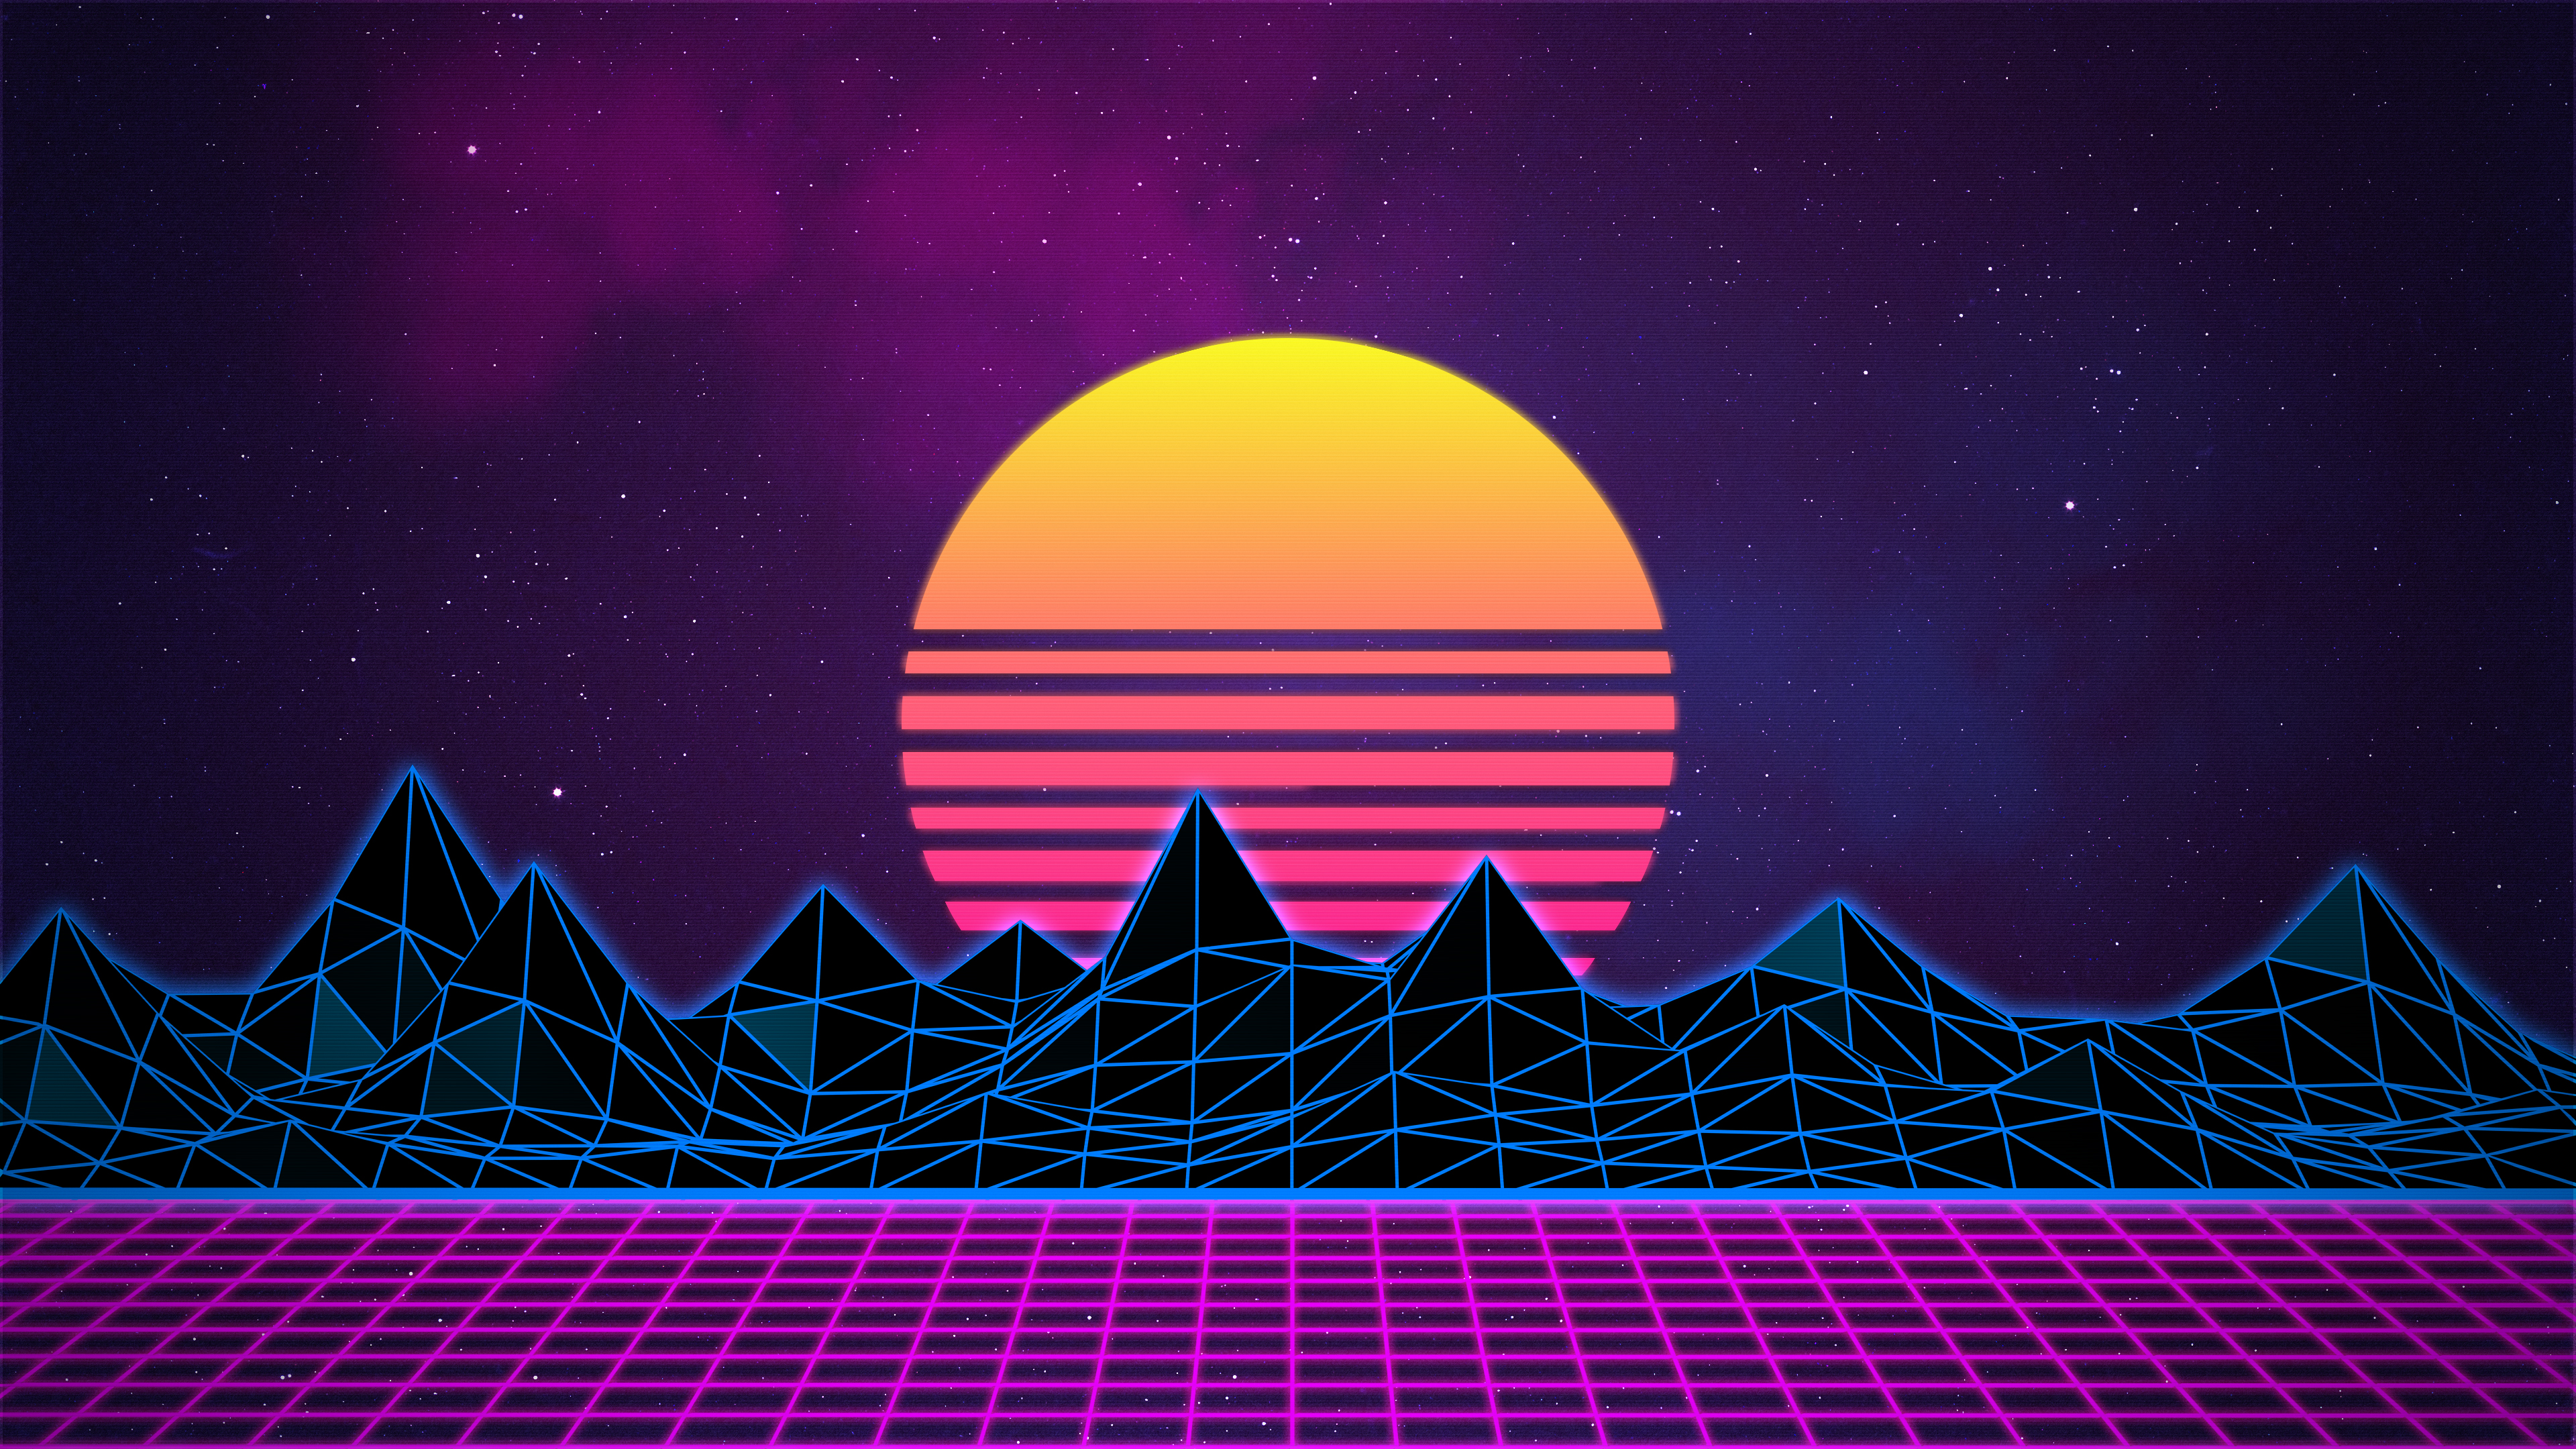 Với Retrowave Neon 80s Background, bạn sẽ được trải nghiệm một trải nghiệm gây nghiện và đầy sinh động. Hình ảnh được thiết kế với các đường neon đầy cuốn hút sẽ đưa bạn trở về những năm 80 đầy mê hoặc và ma mị.